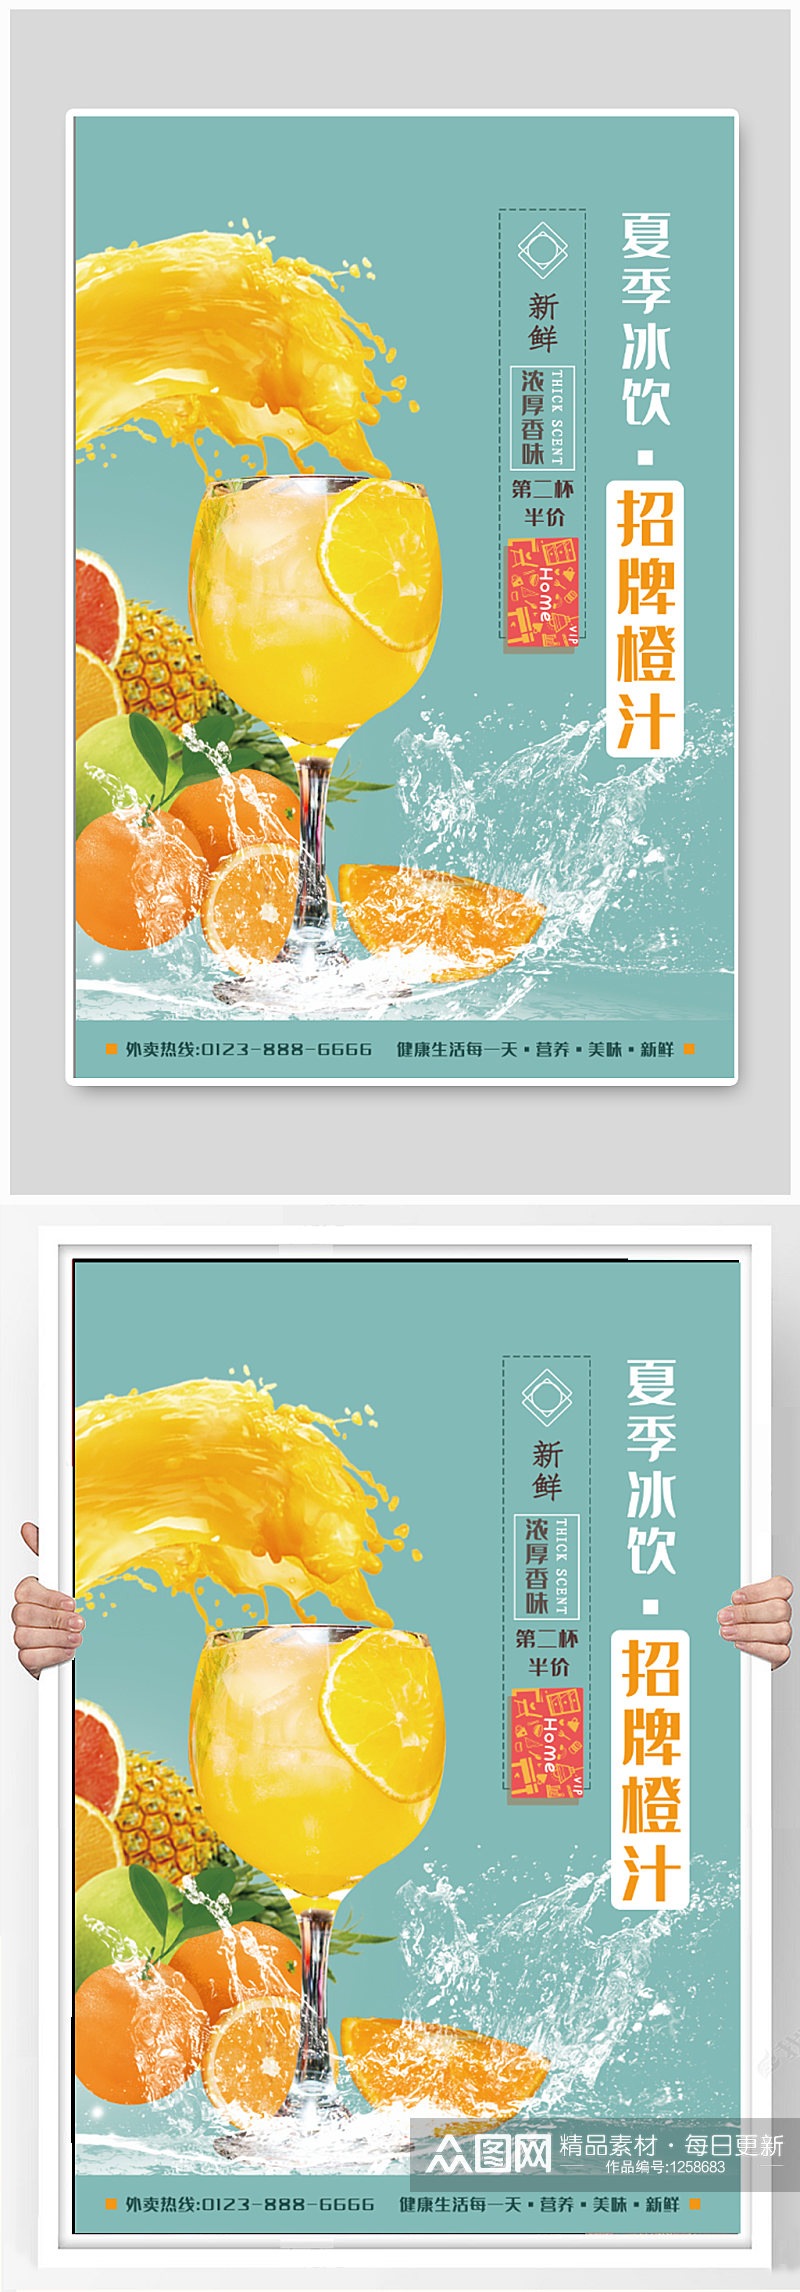 夏季冰饮橙汁饮品店海报素材